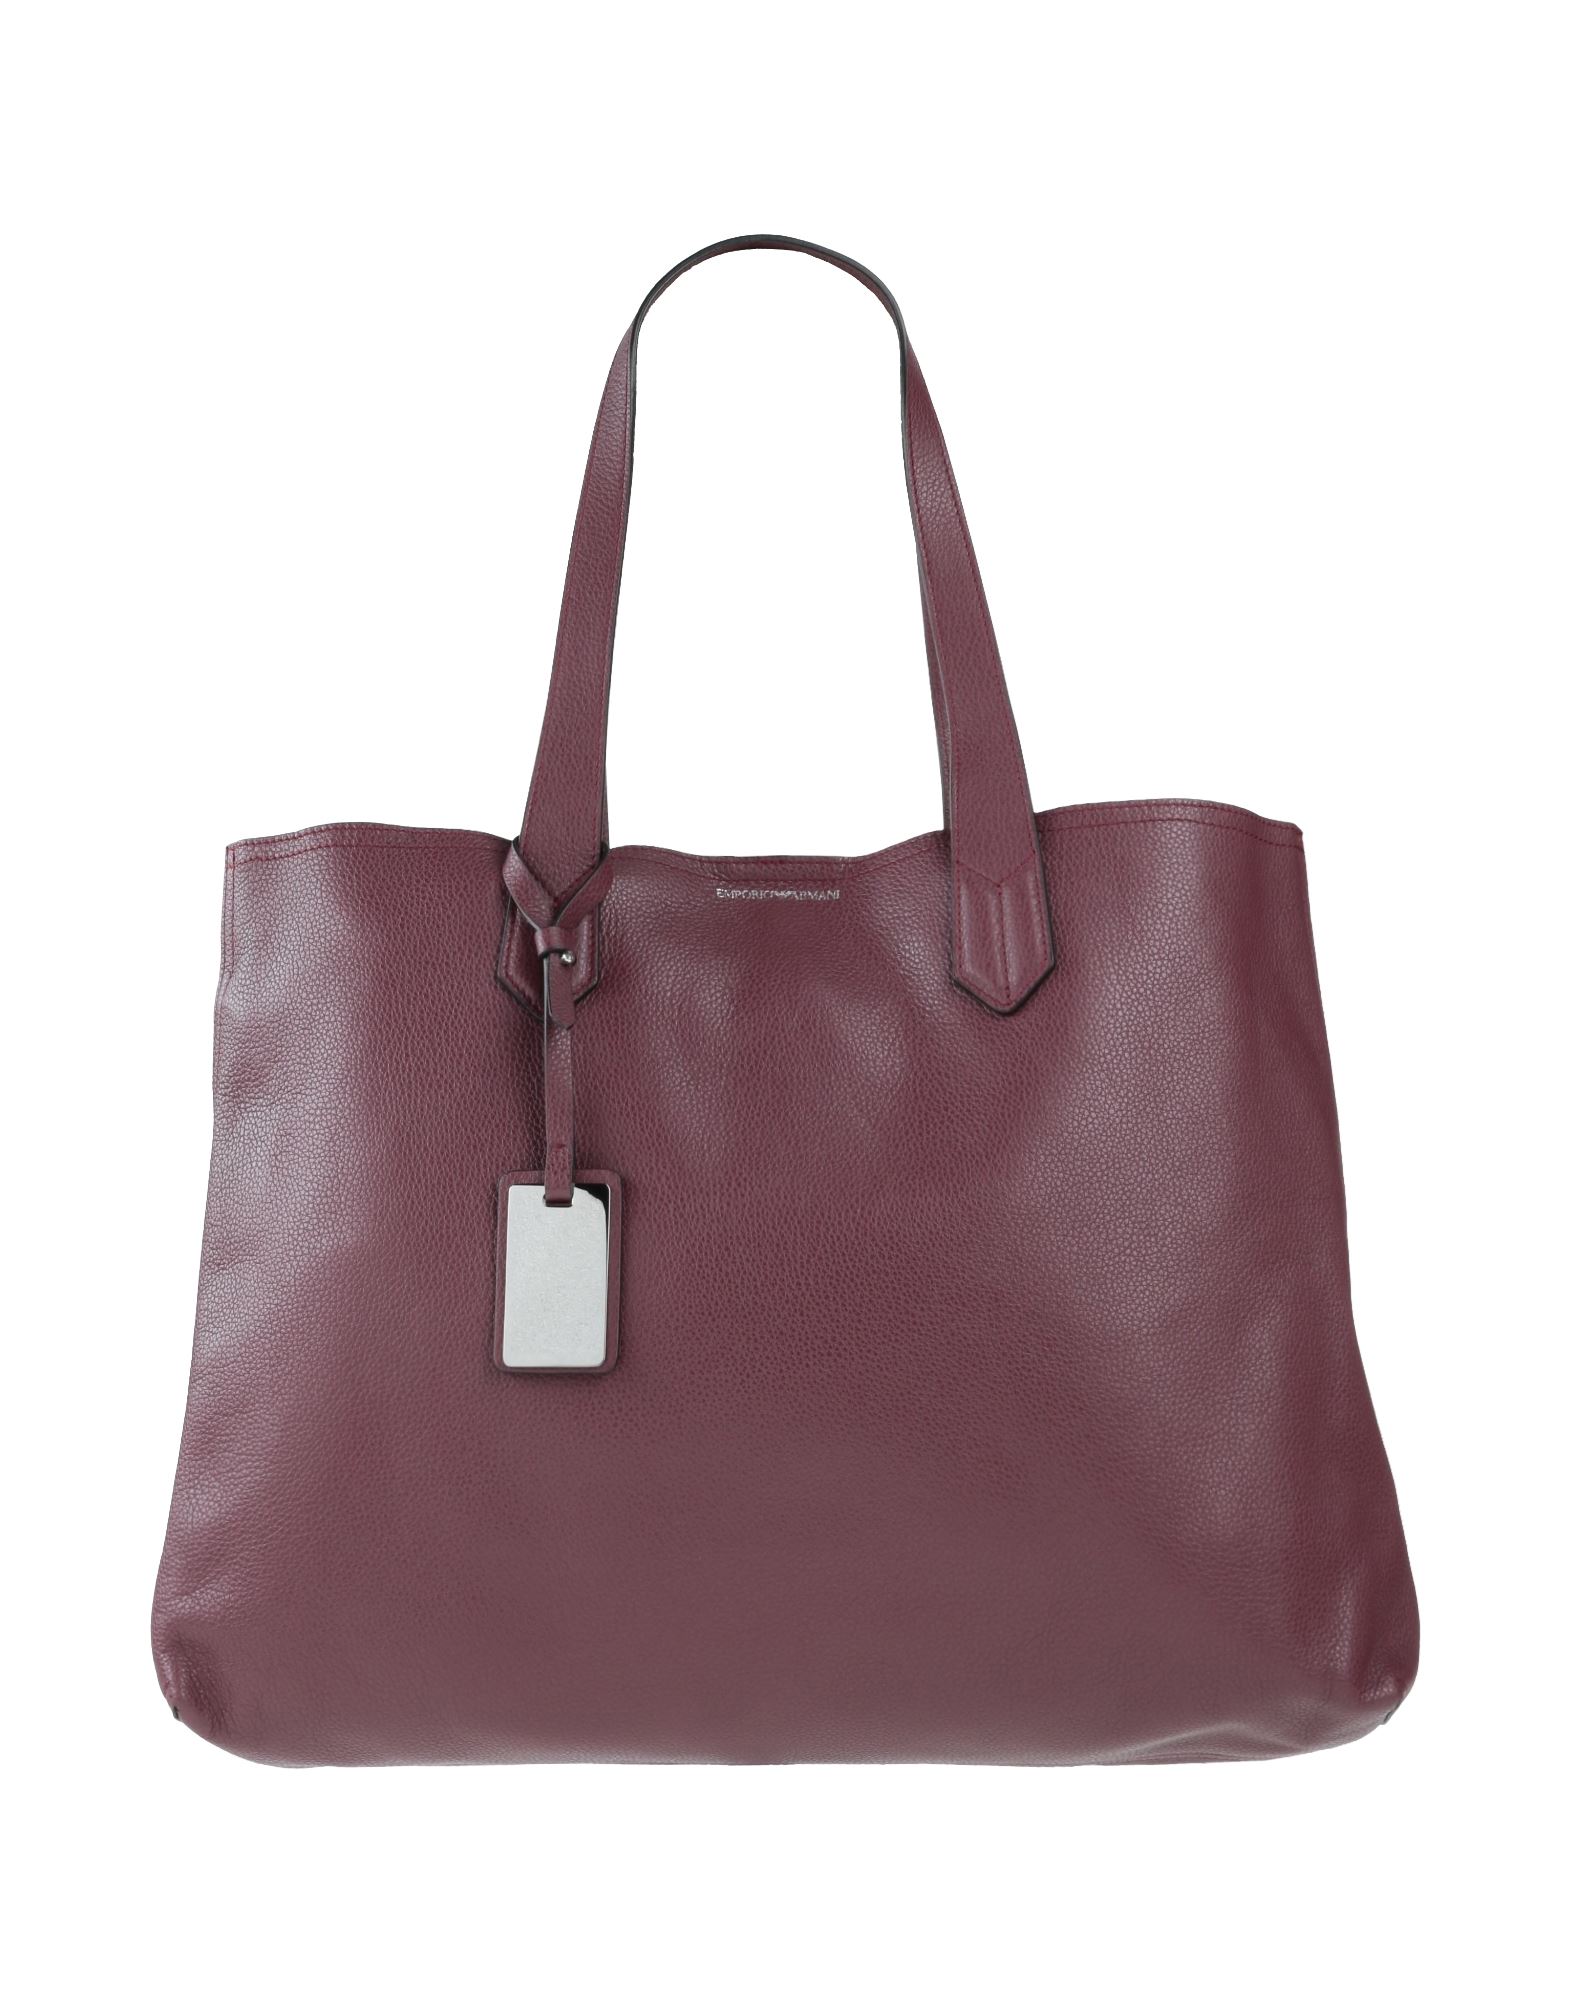 Emporio Armani Handbags In Maroon